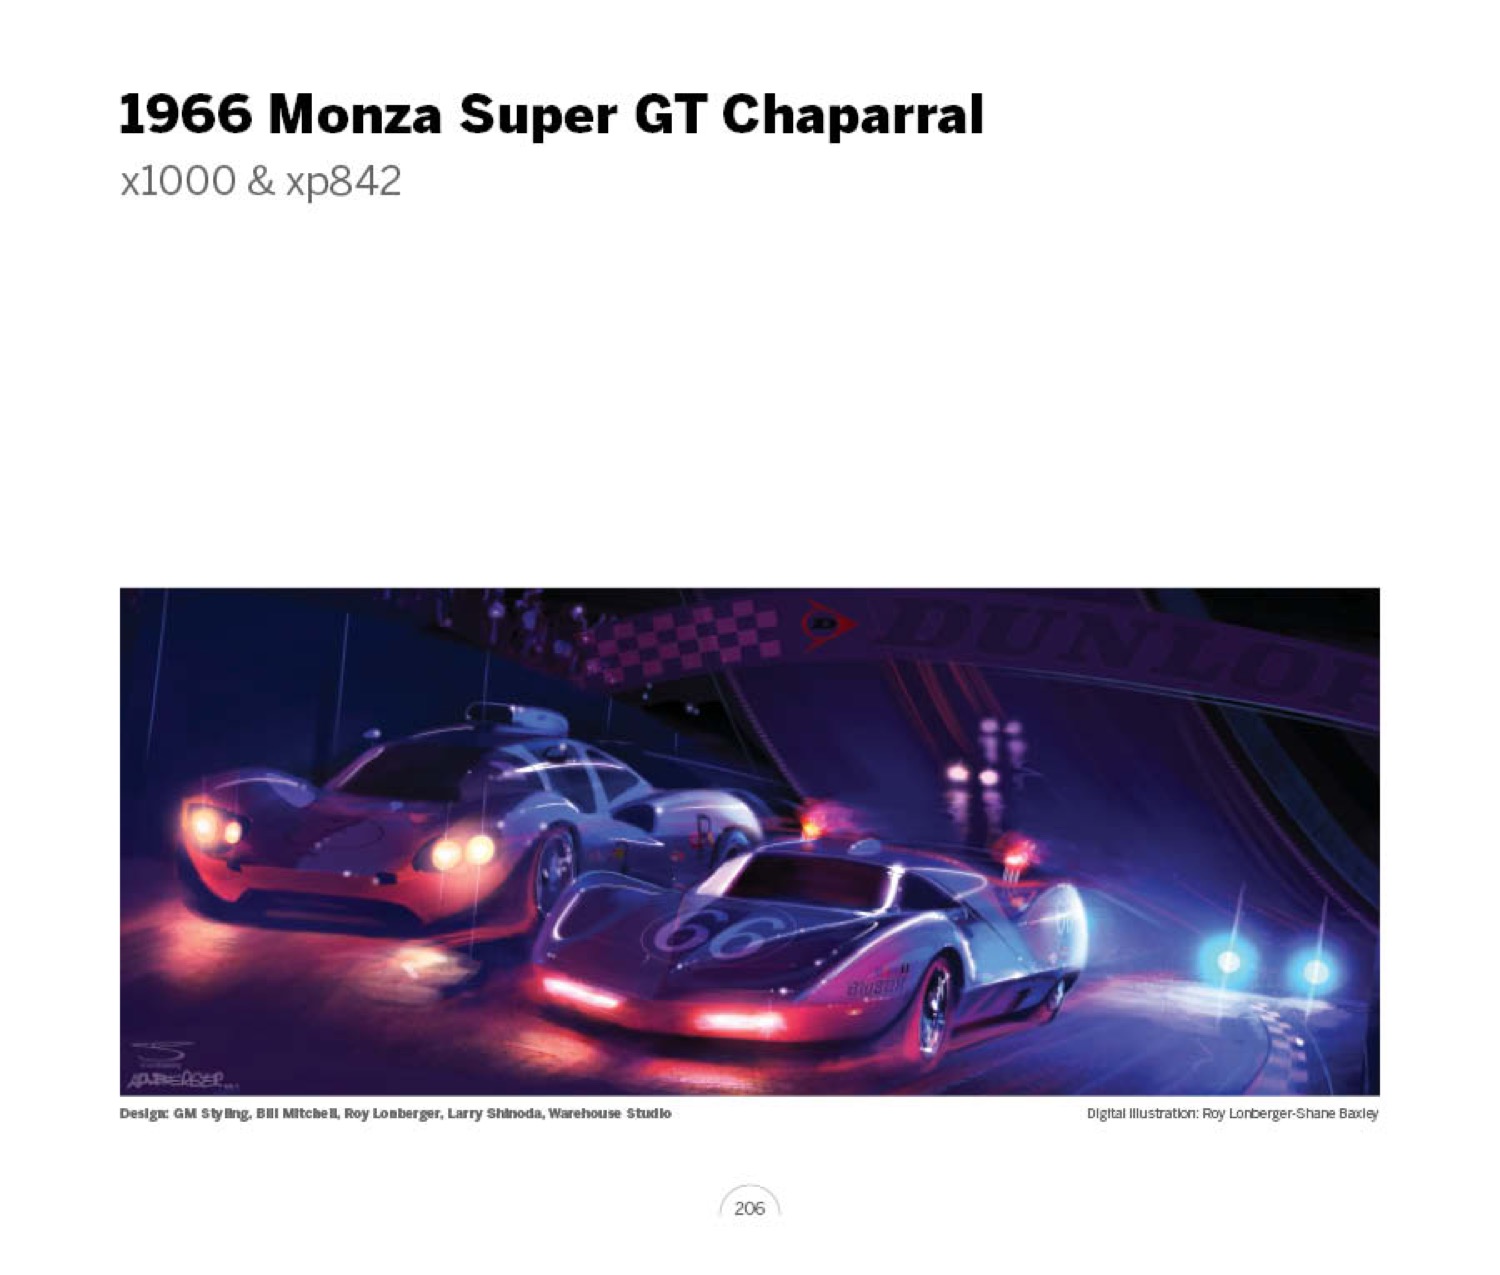 (28) 1966 Monza Super GT Chaparral x1000 & xp842 Lo Rez.jpg